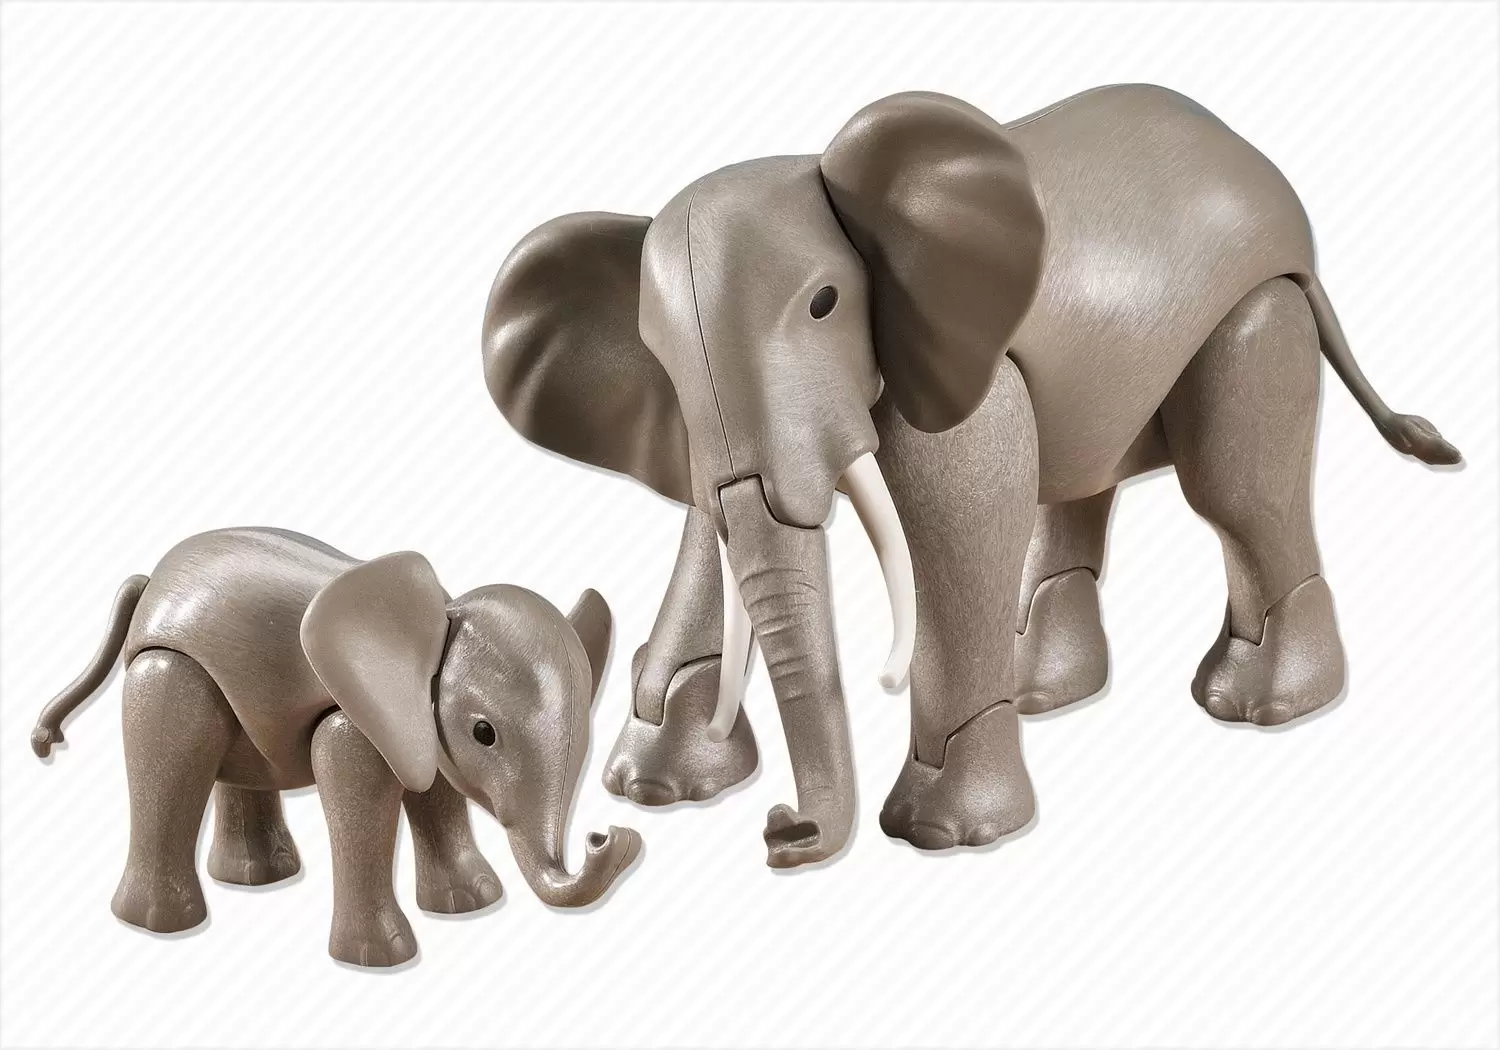 Plamobil Animal Sets - Elephant and baby elephant